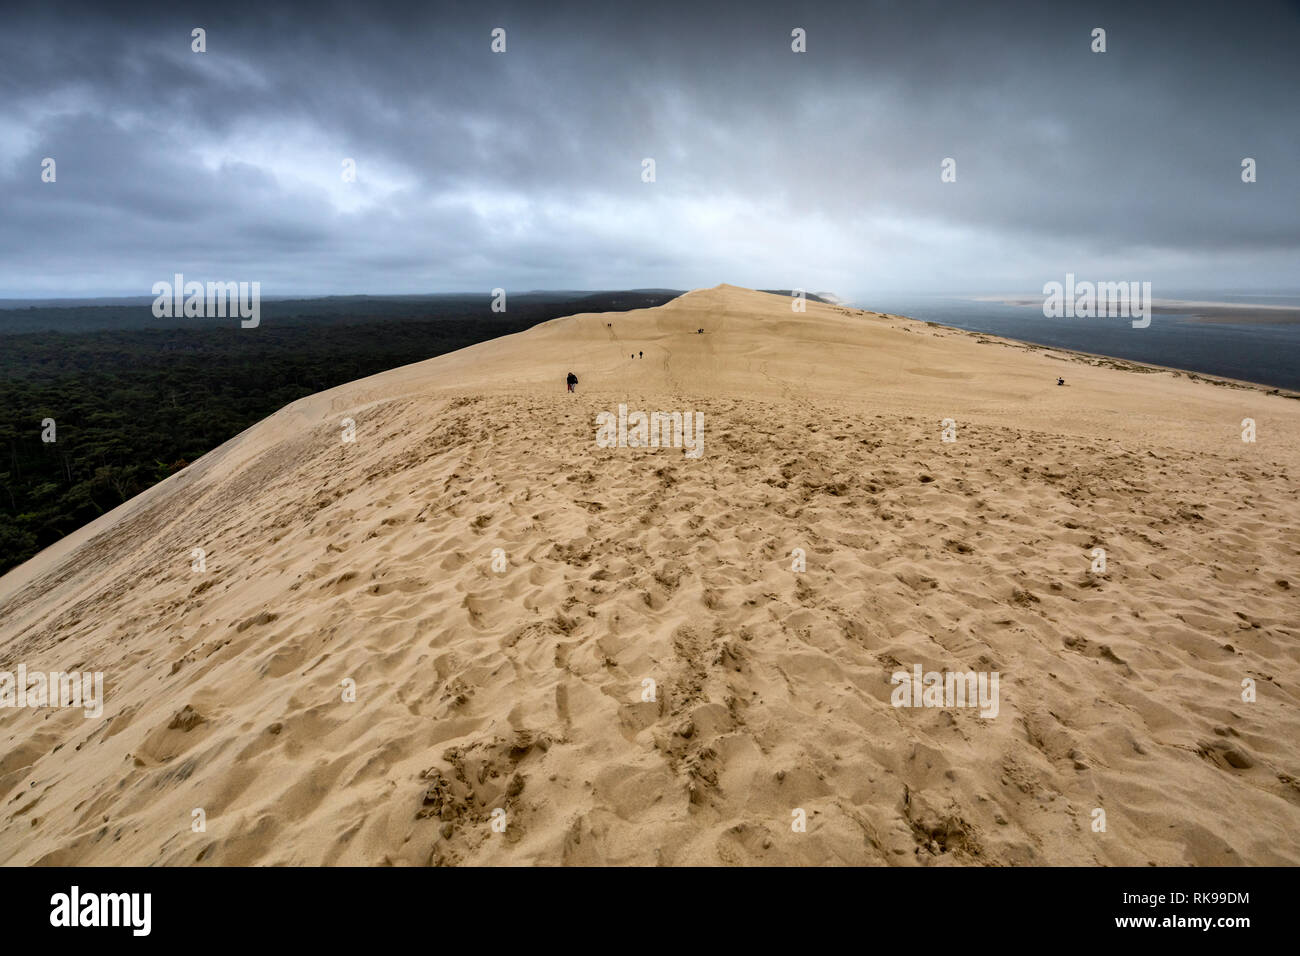 La Dune du Pilat La dune de sable la plus haute d'Europe situé à La Teste-de-Buch dans la région de la Baie d'arcachon france, 60 km de Bordeaux Banque D'Images